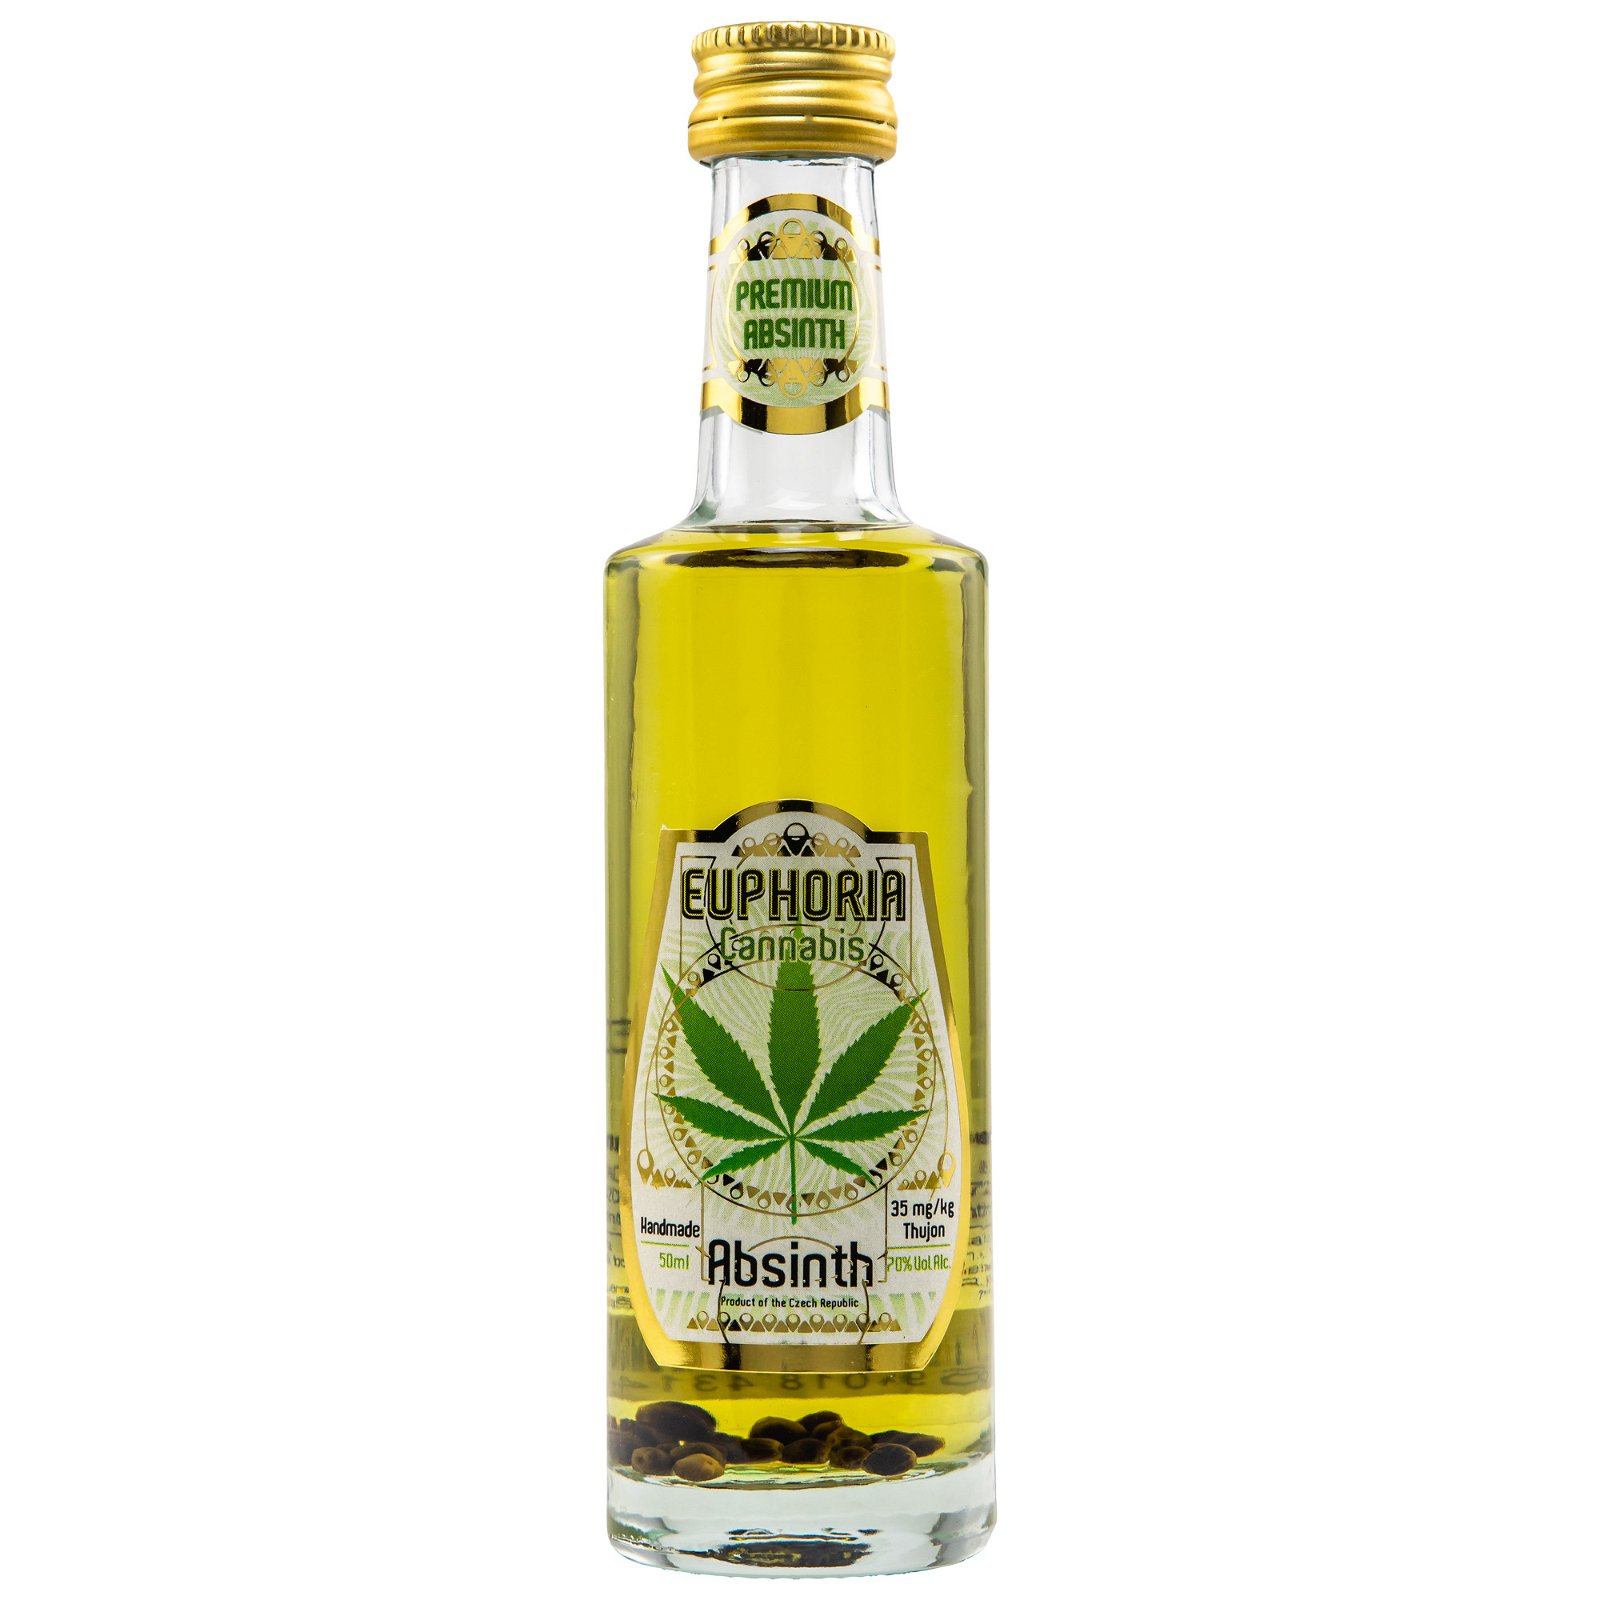 Euphoria Cannabis Absinth (Miniatur 50ml)